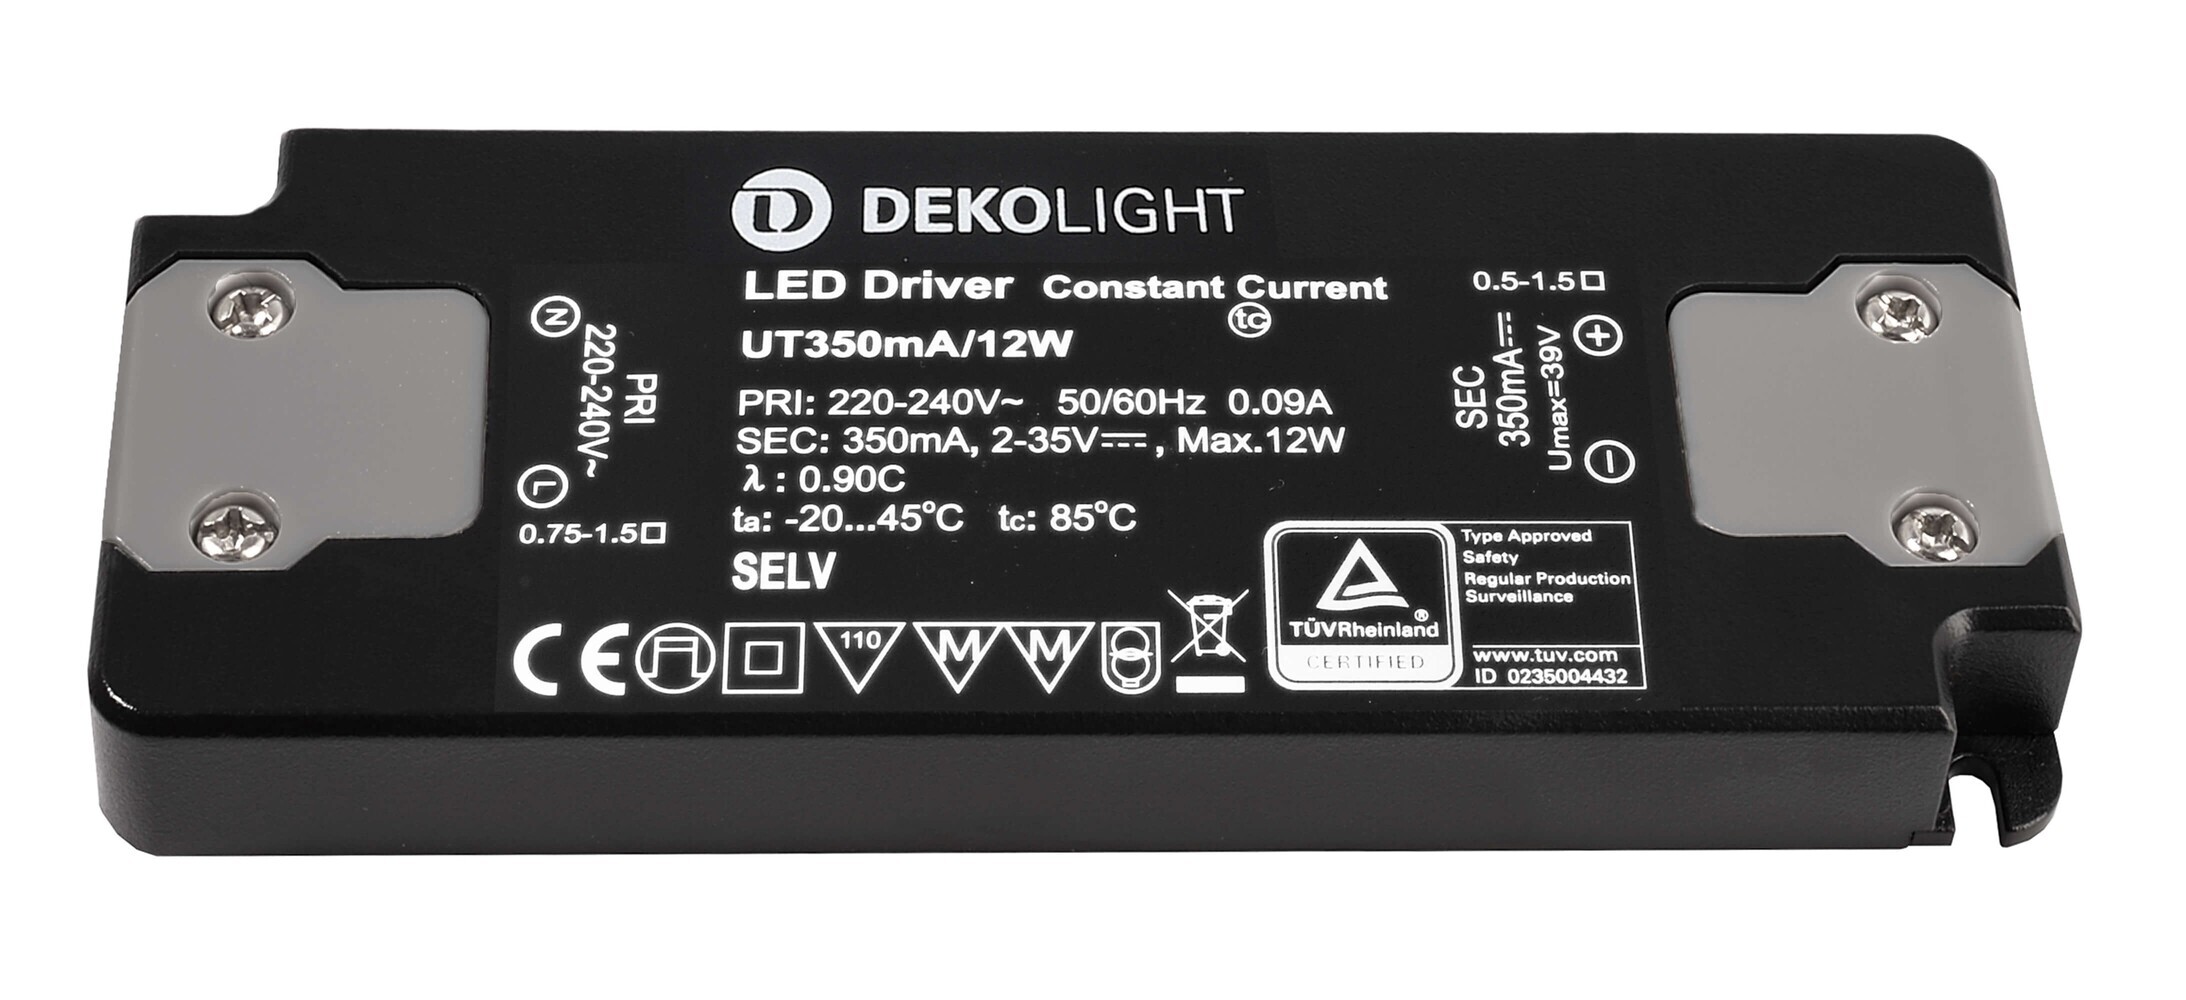 Hochwertiges LED Netzteil von Deko-Light für optimale Beleuchtungseffizienz